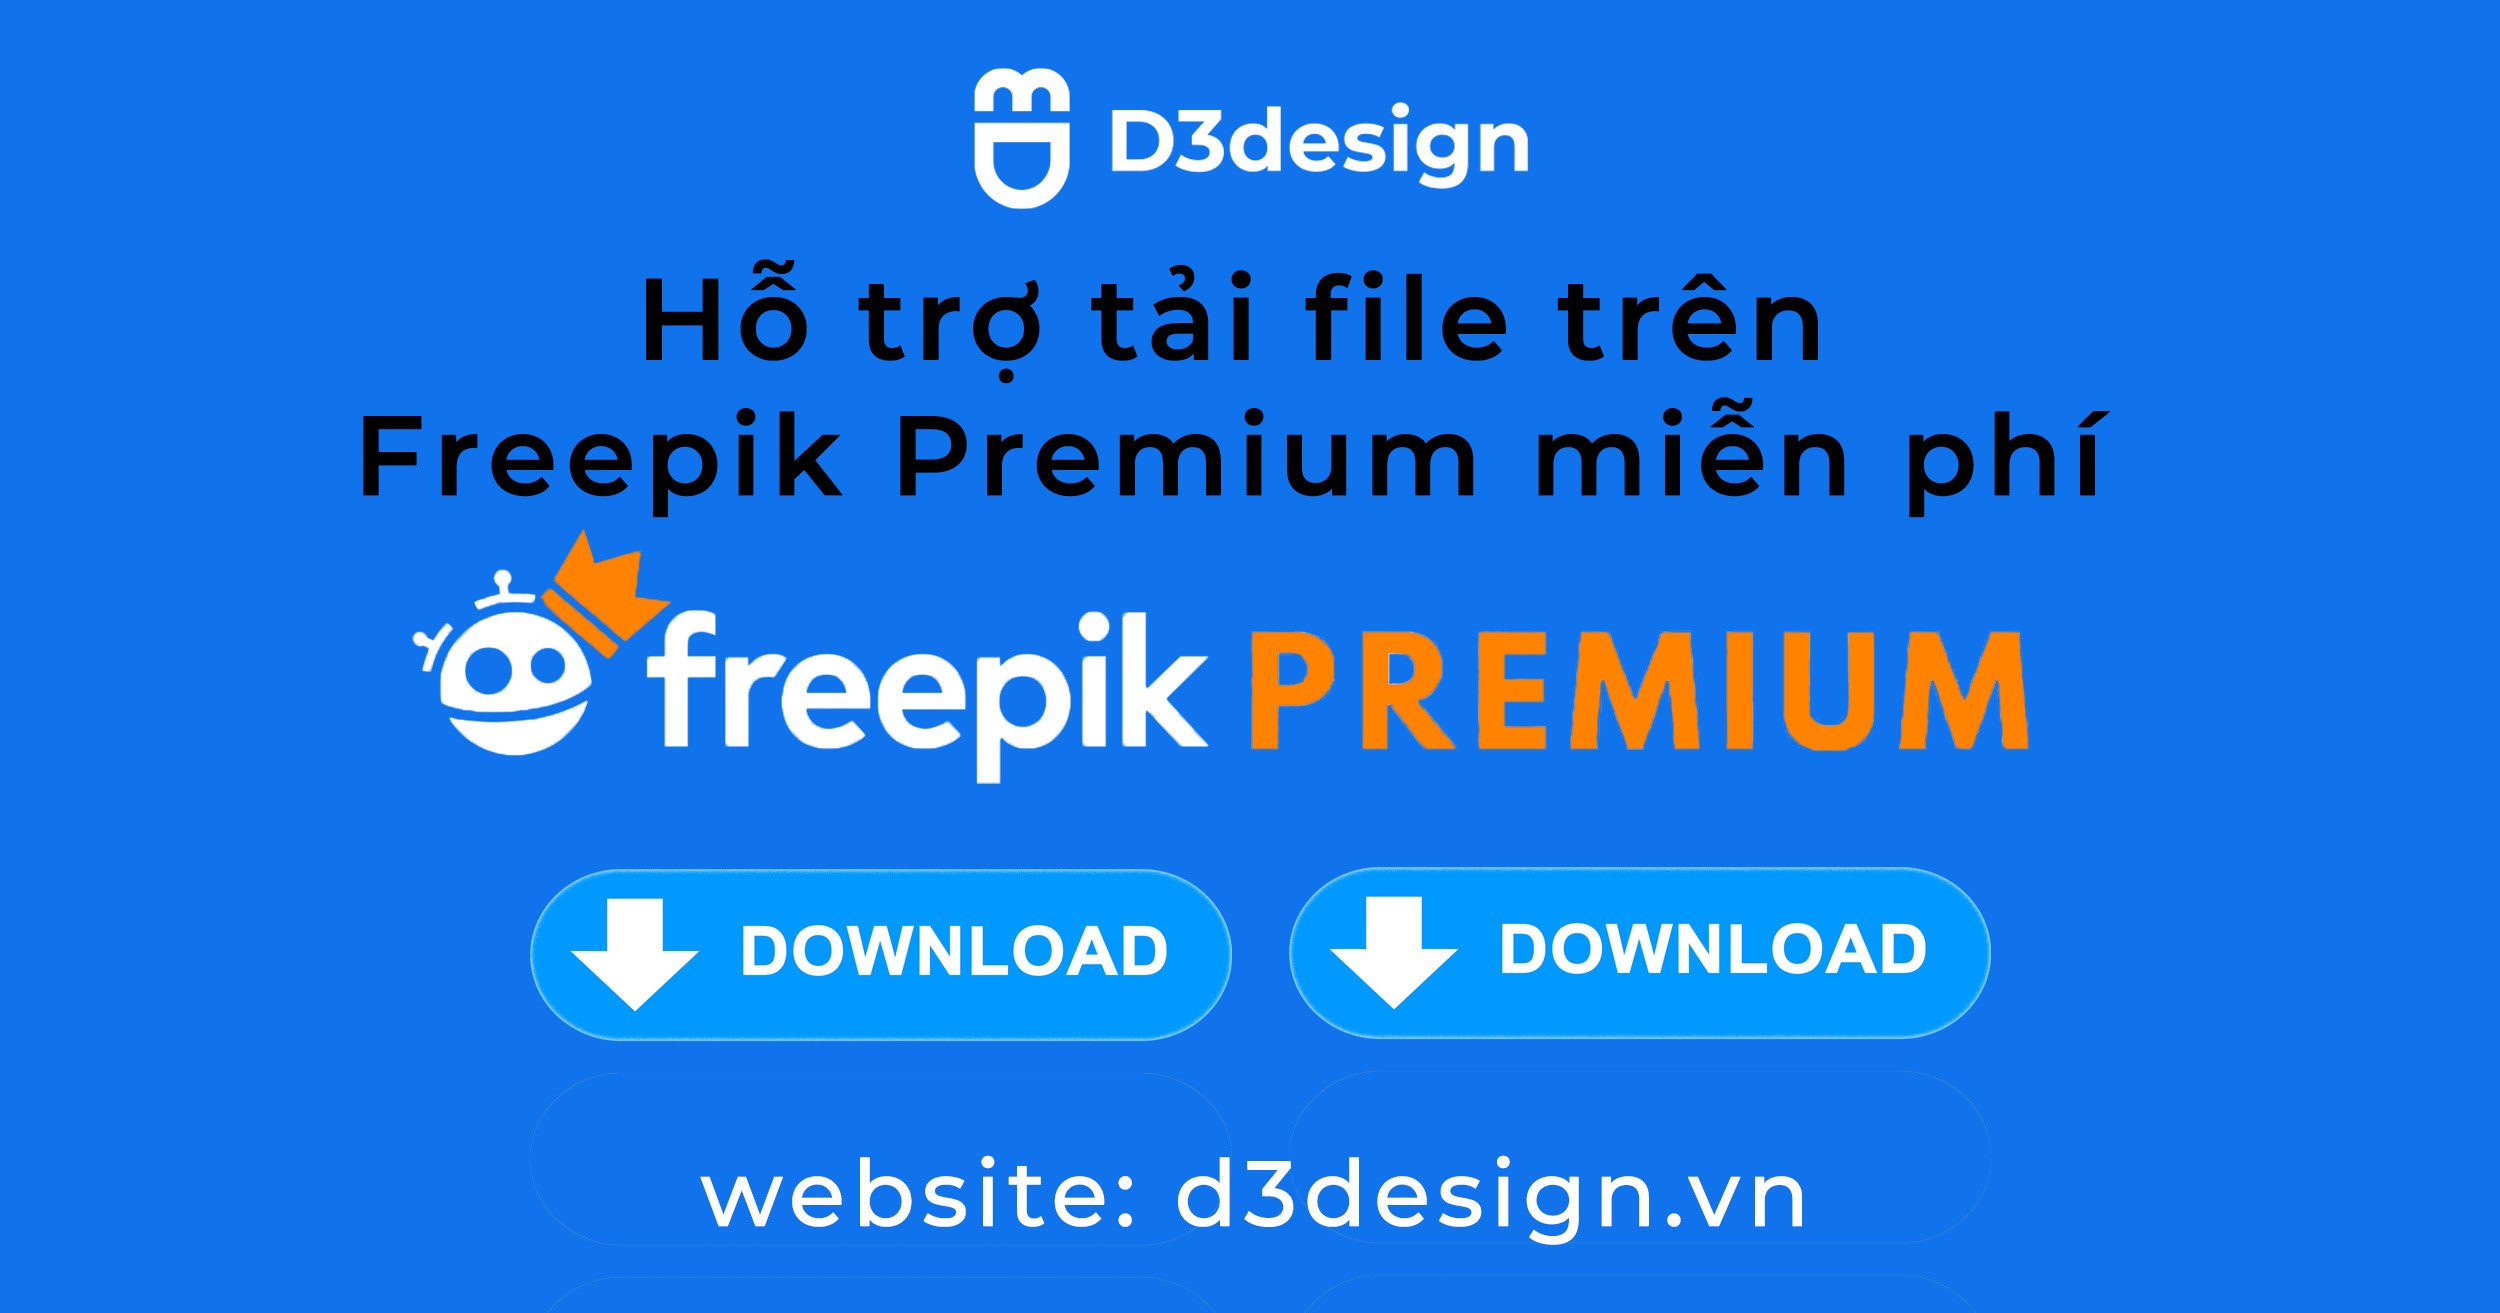 d3design-get-file-freepik-premium-mi-n-ph-t-i-file-freepik-premium